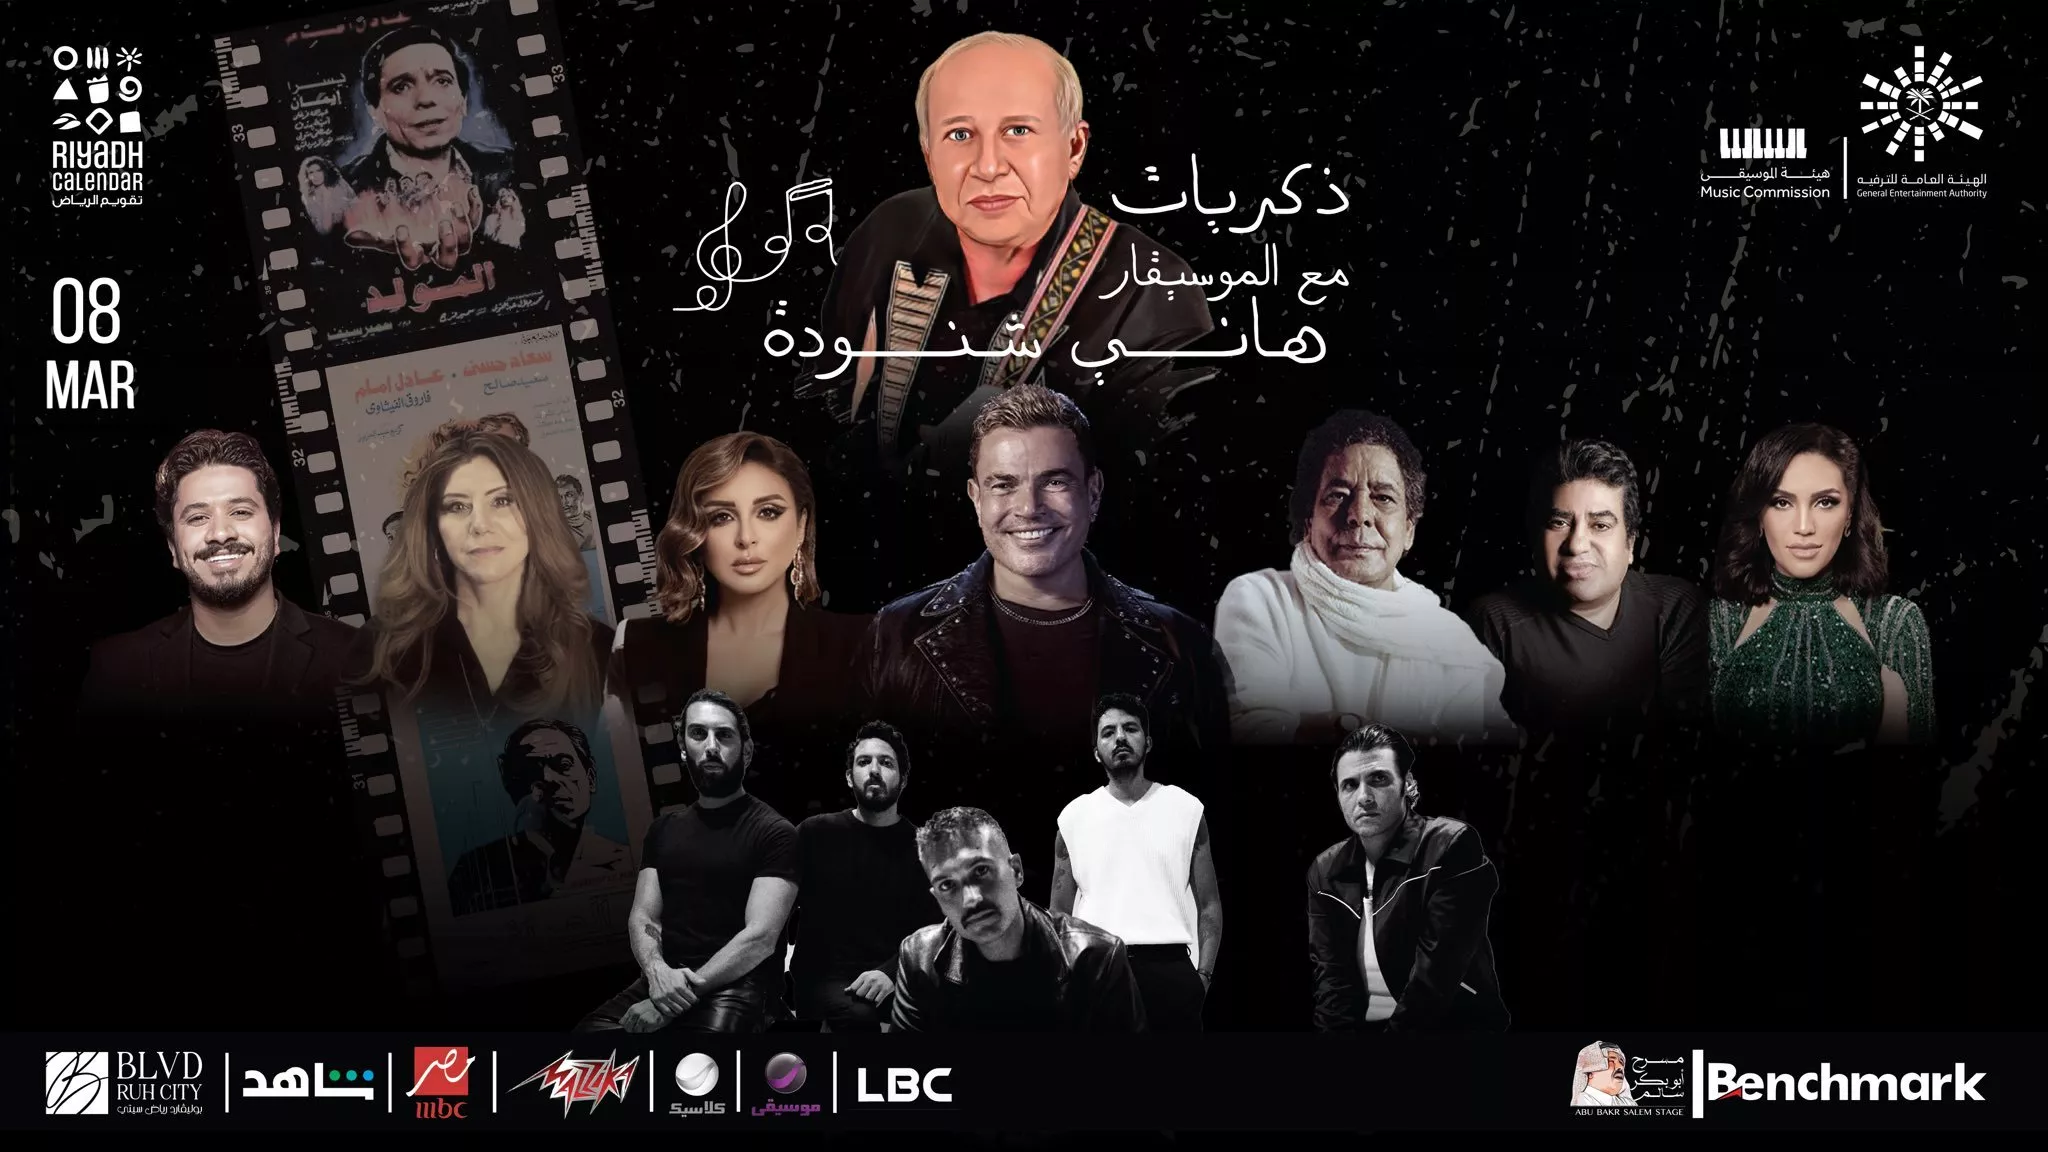 حفل ذكريات مع الموسيقار  هاني شنودة في الرياض: ليلة موسيقية ضخمة